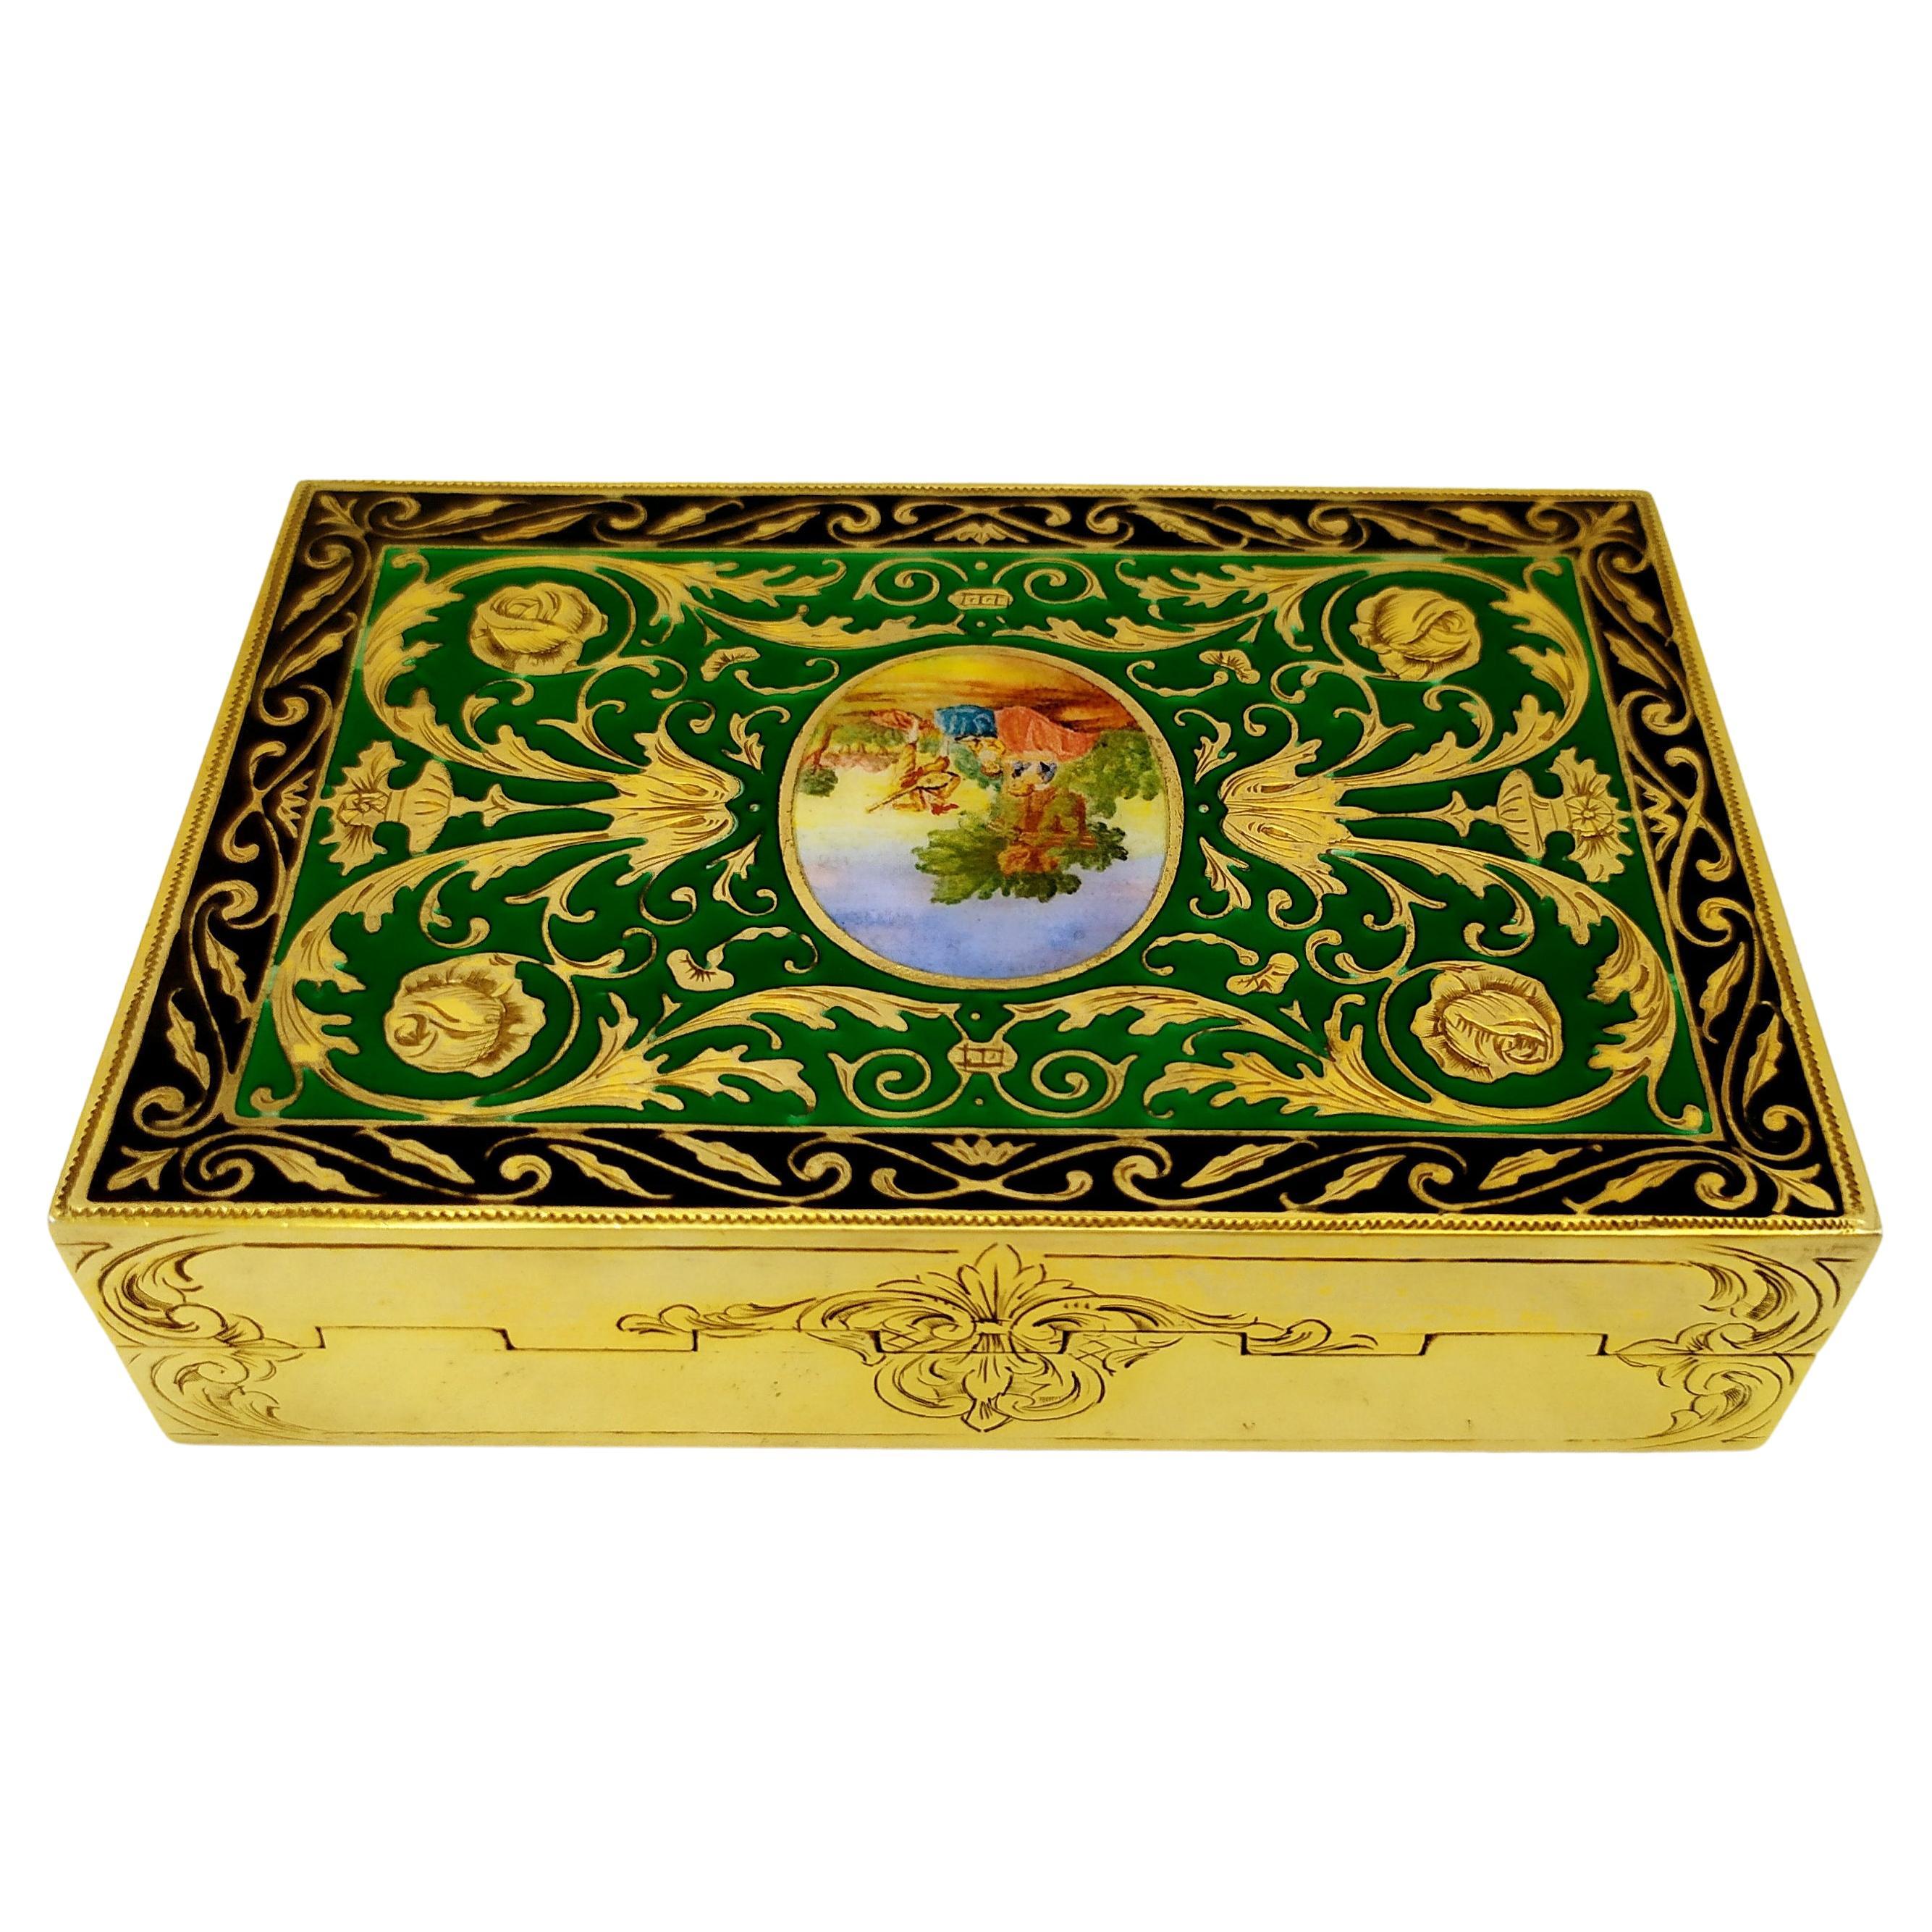 Tabelle Box Grün in Französisch Empire Louis XVI-Stil Sterling Silber Salimbeni.
Tischdose aus vergoldetem 925/1000er Sterlingsilber mit durchscheinendem, gebranntem Email, eingefügt in eine sehr feine Handgravur von Ornamenten im Stil des